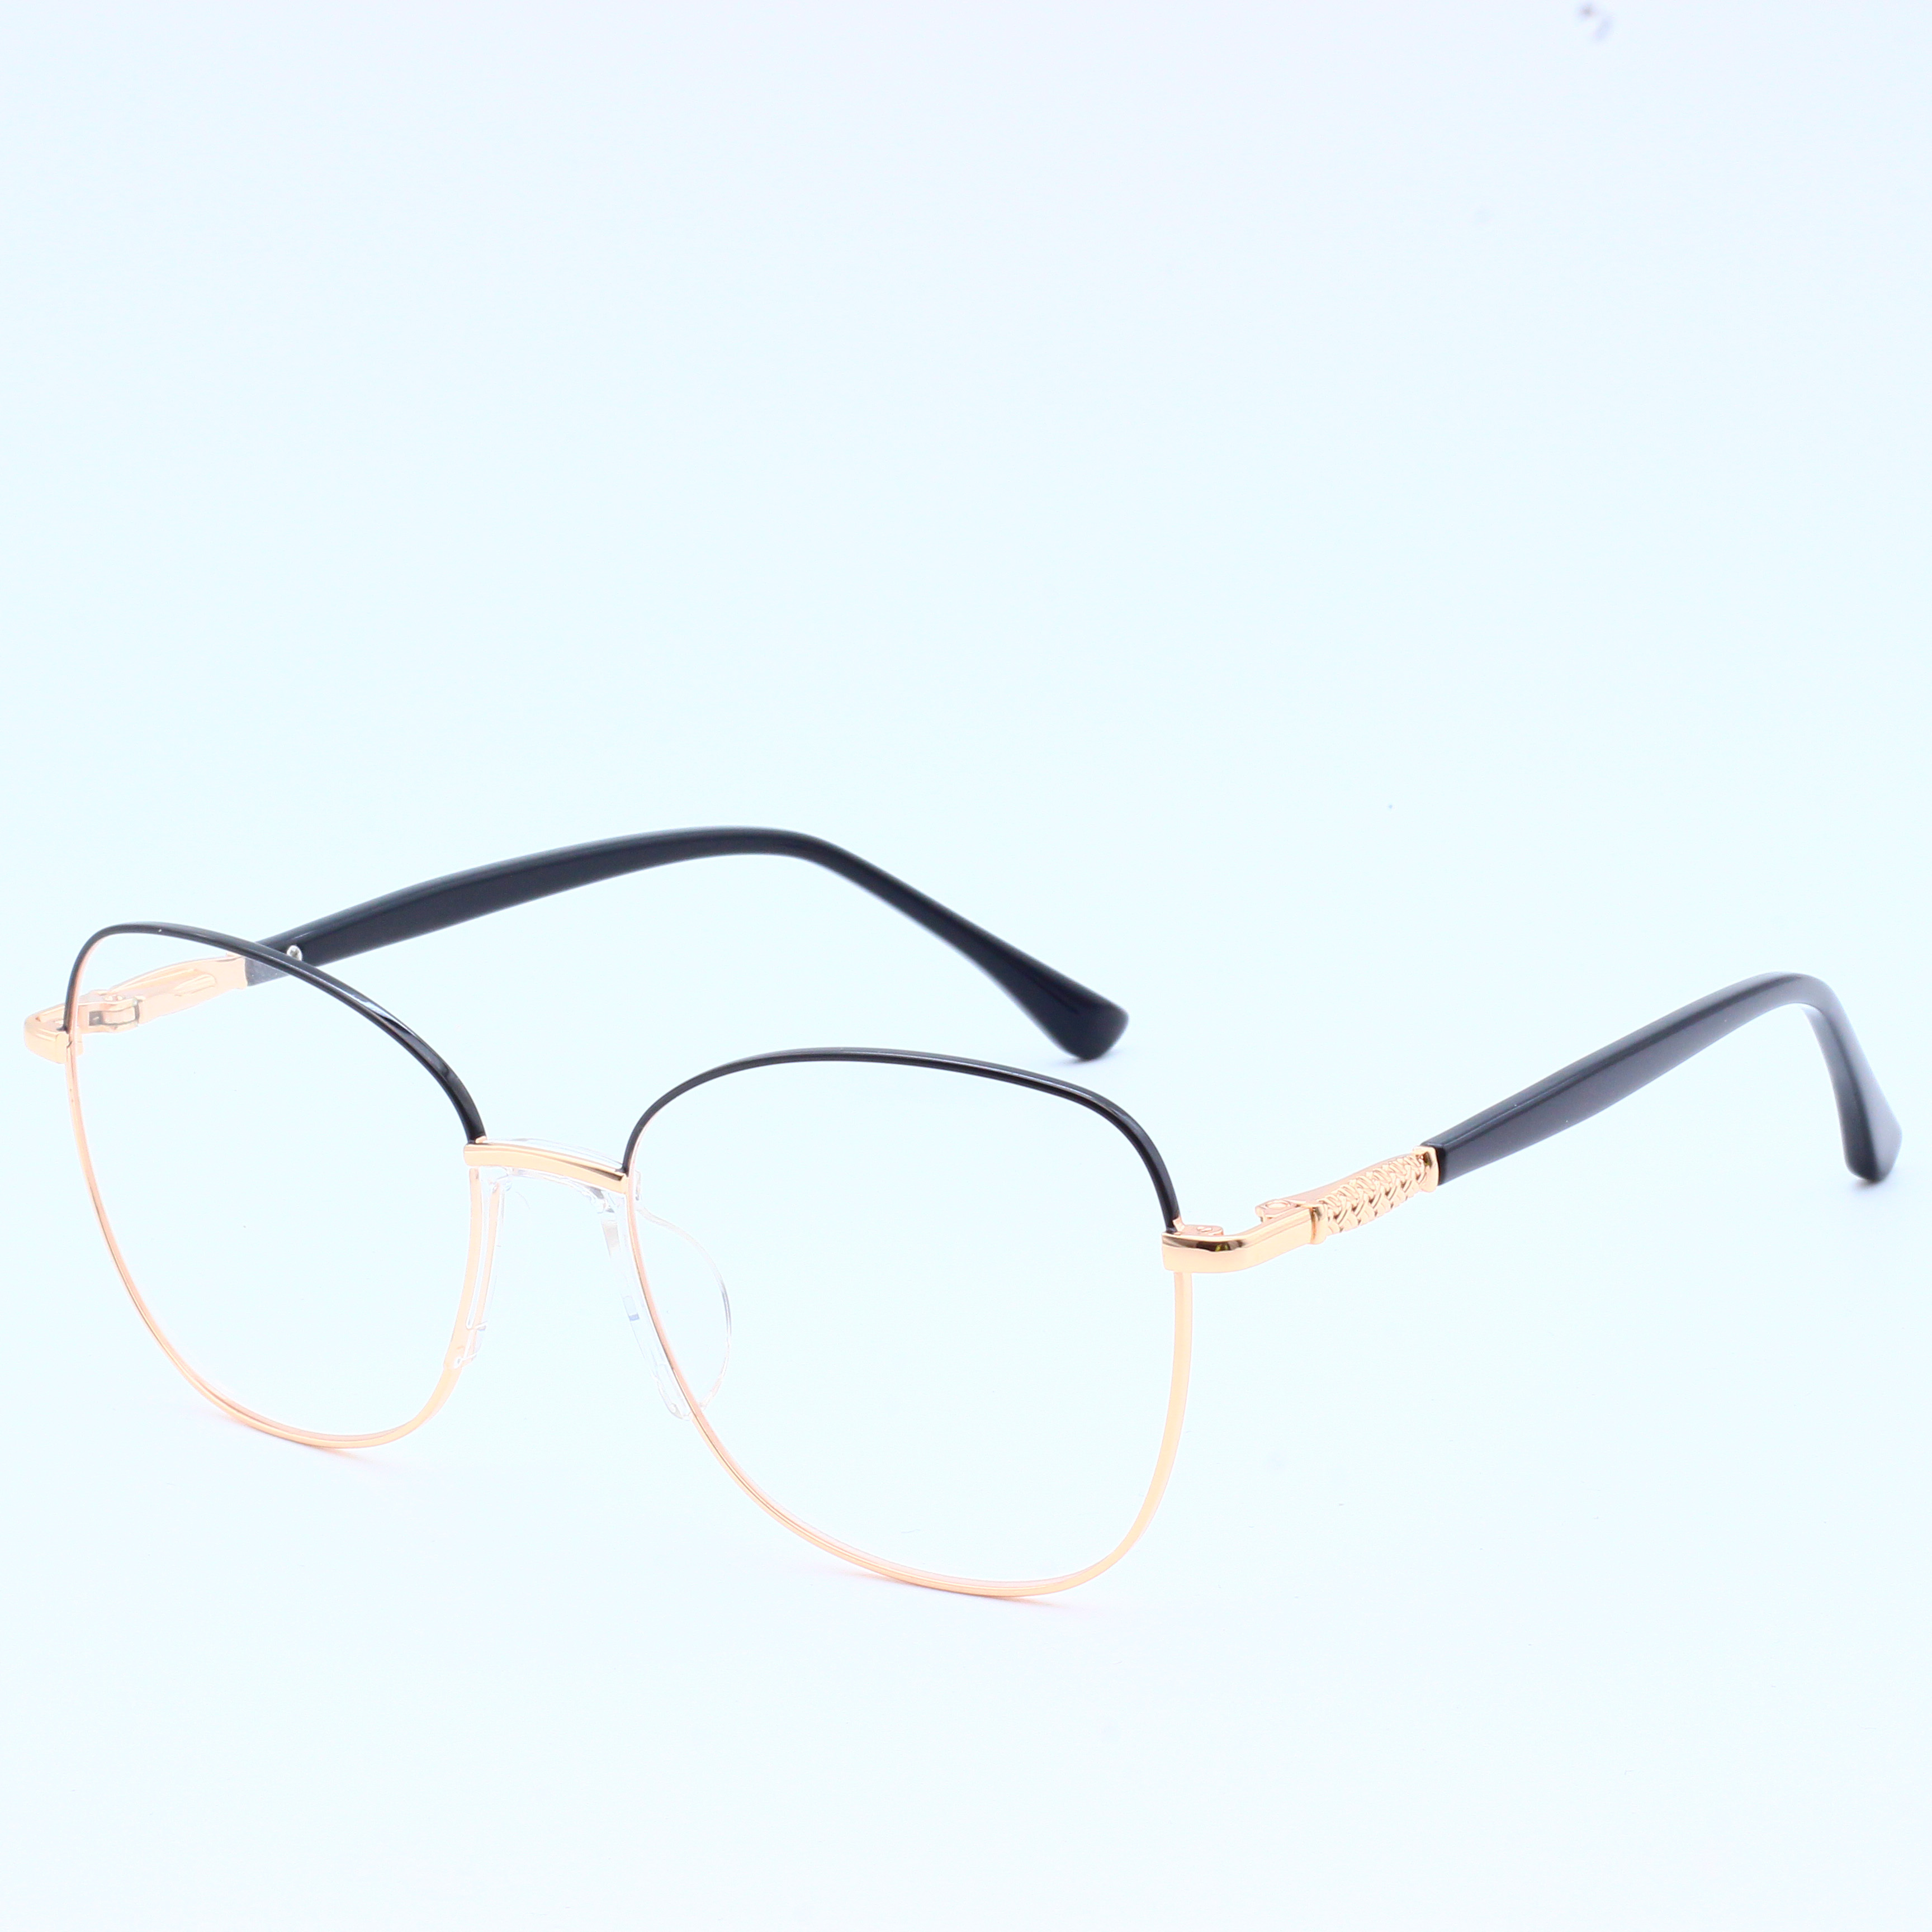 Designer Brand Metal Wholesale Eyeglasses River Optical Frame (5)